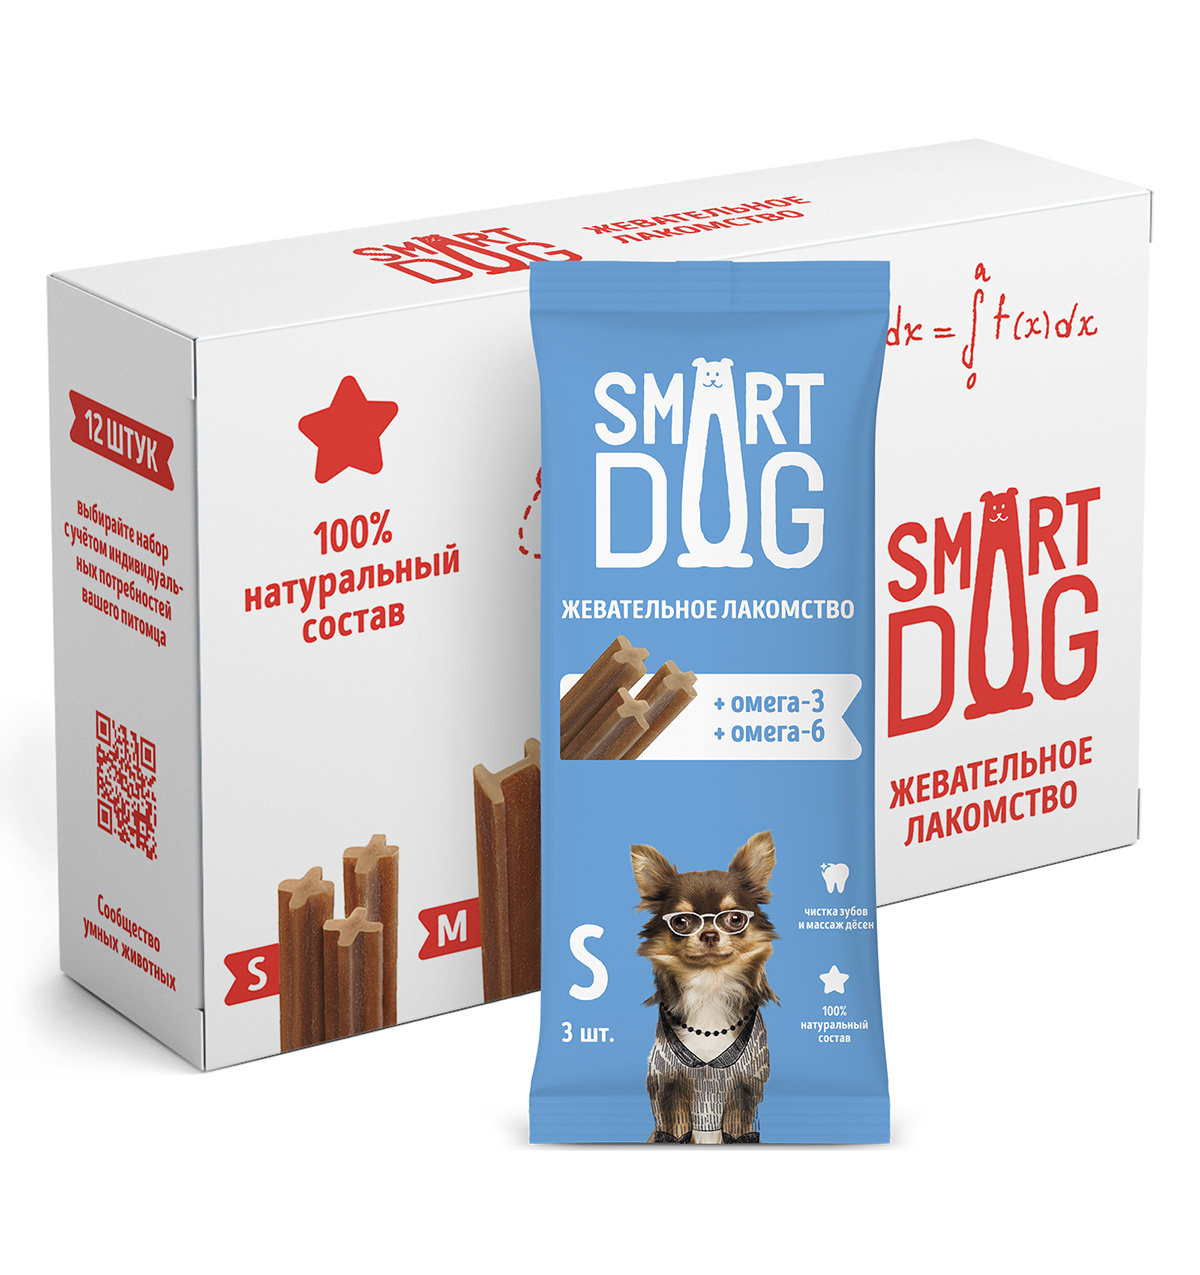 Smart Dog лакомства Smart Dog лакомства Упаковка 12 штук Жевательное лакомство с омега-3 и -6 для собак и щенков (L) smart dog лакомства smart dog лакомства жевательное лакомство с витаминами и минералами для собак и щенков l